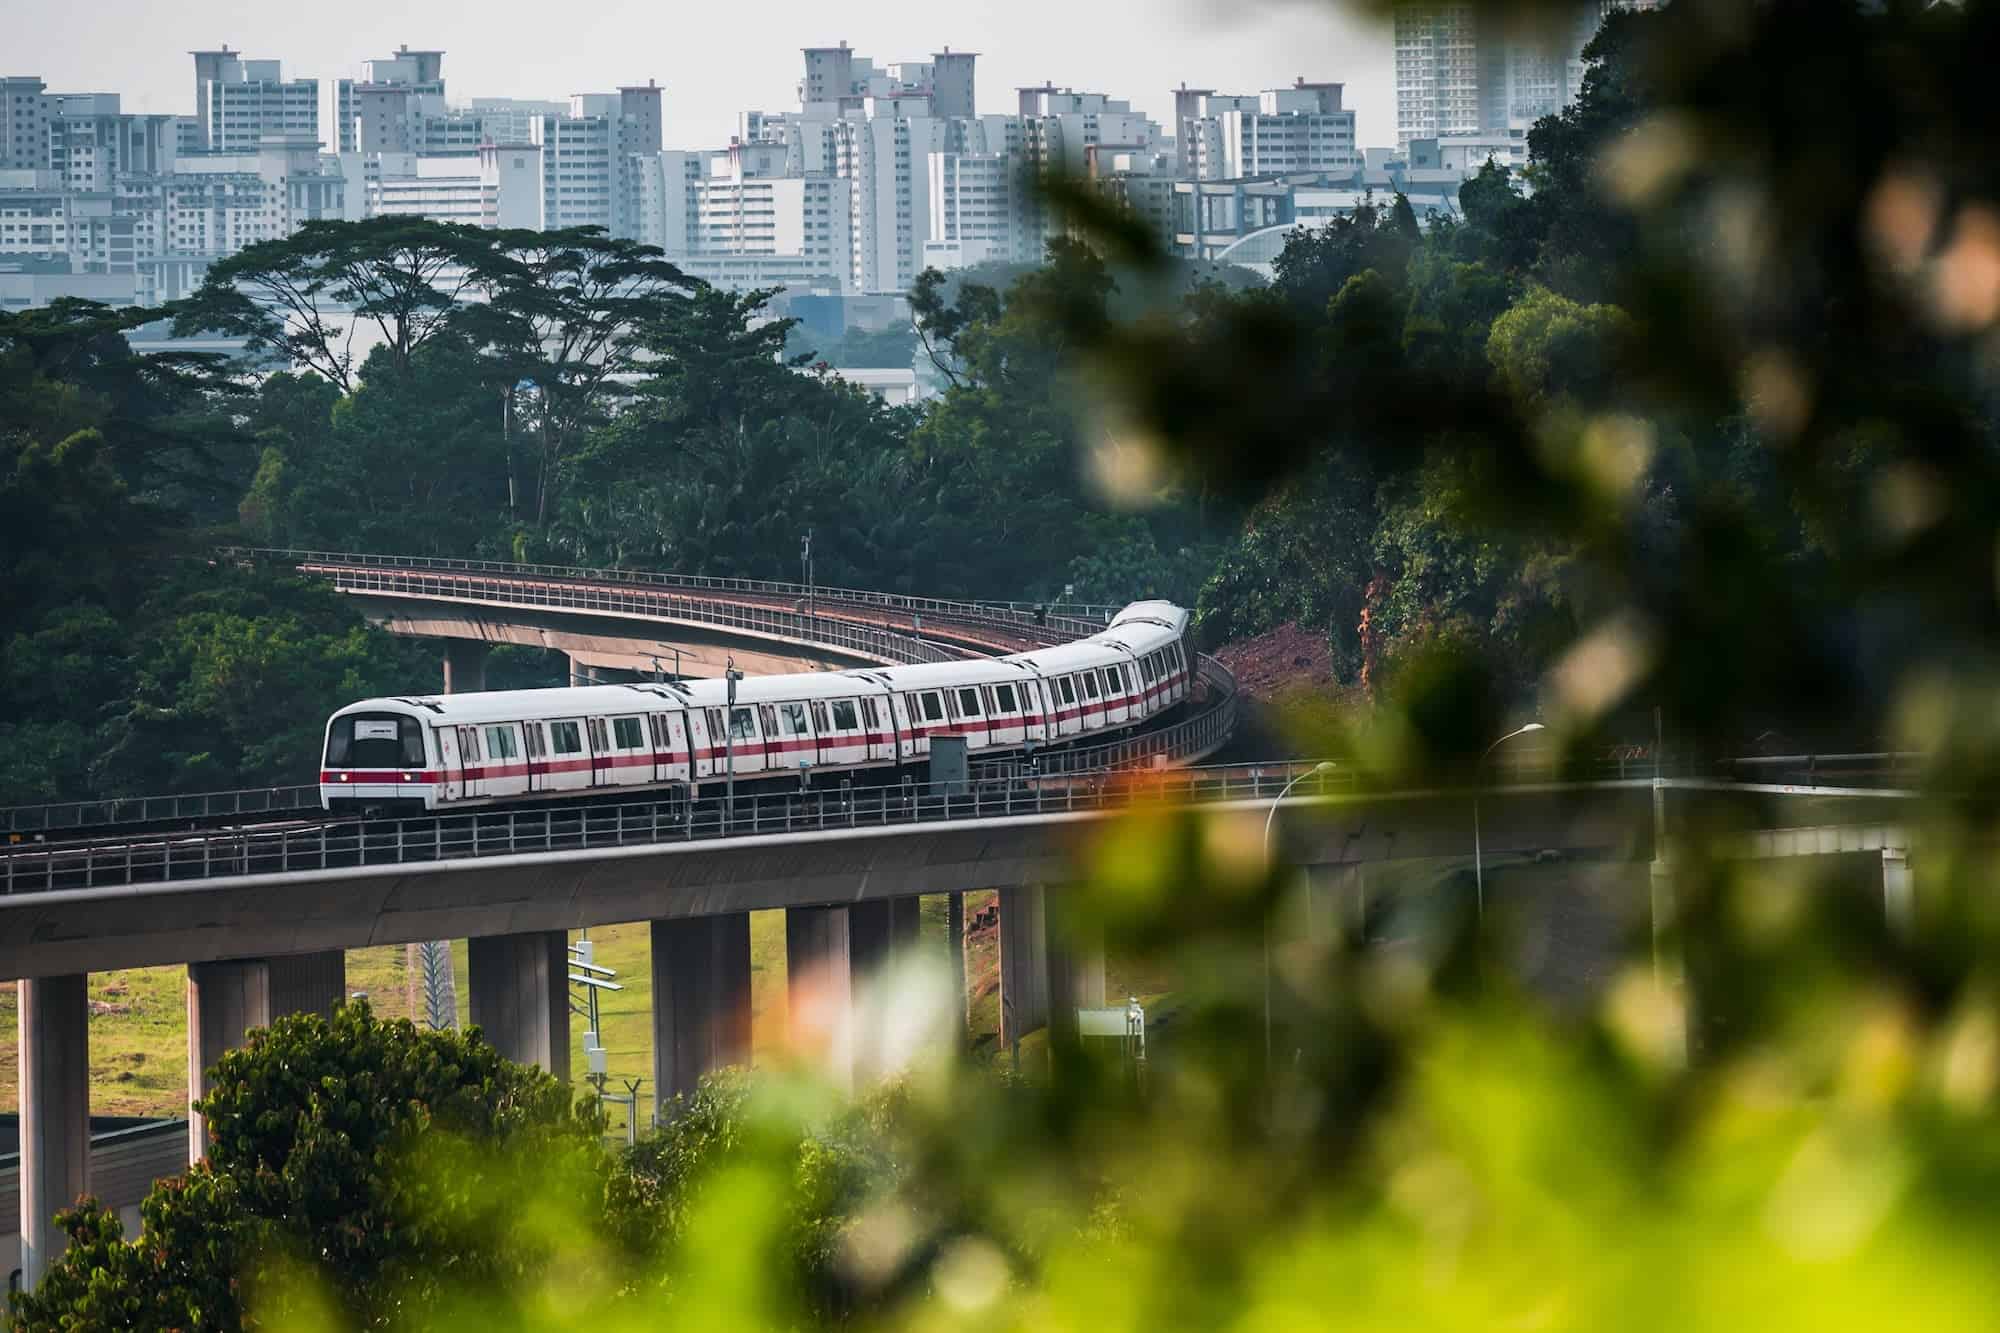 A Mass Rapid Transit (MRT) train making its way around a bend through the landscape of lush greenery